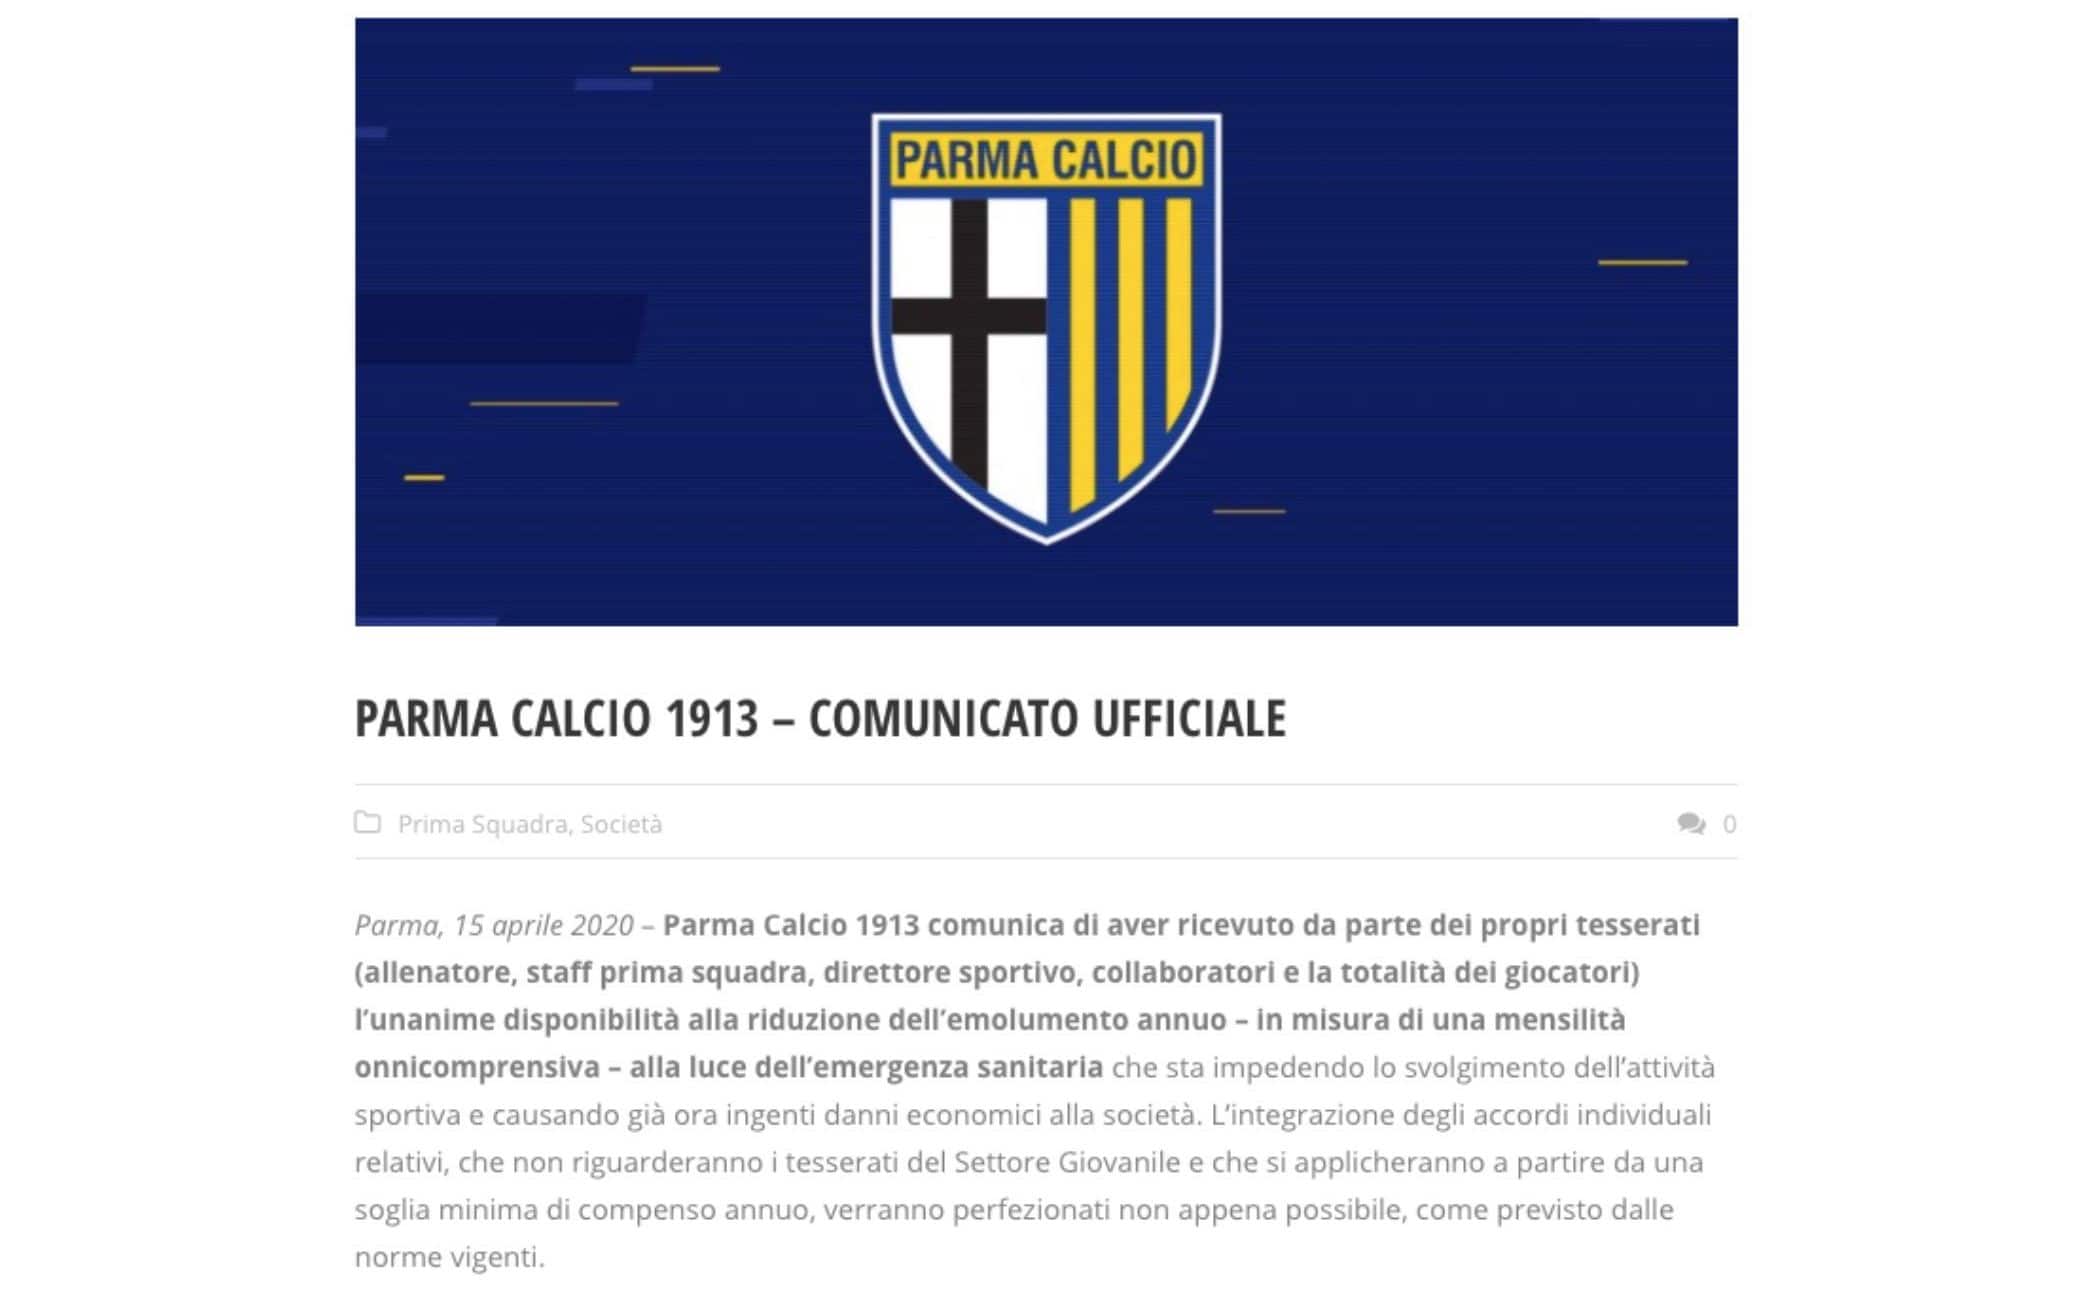 Il comunicato ufficiale sul sito del Parma